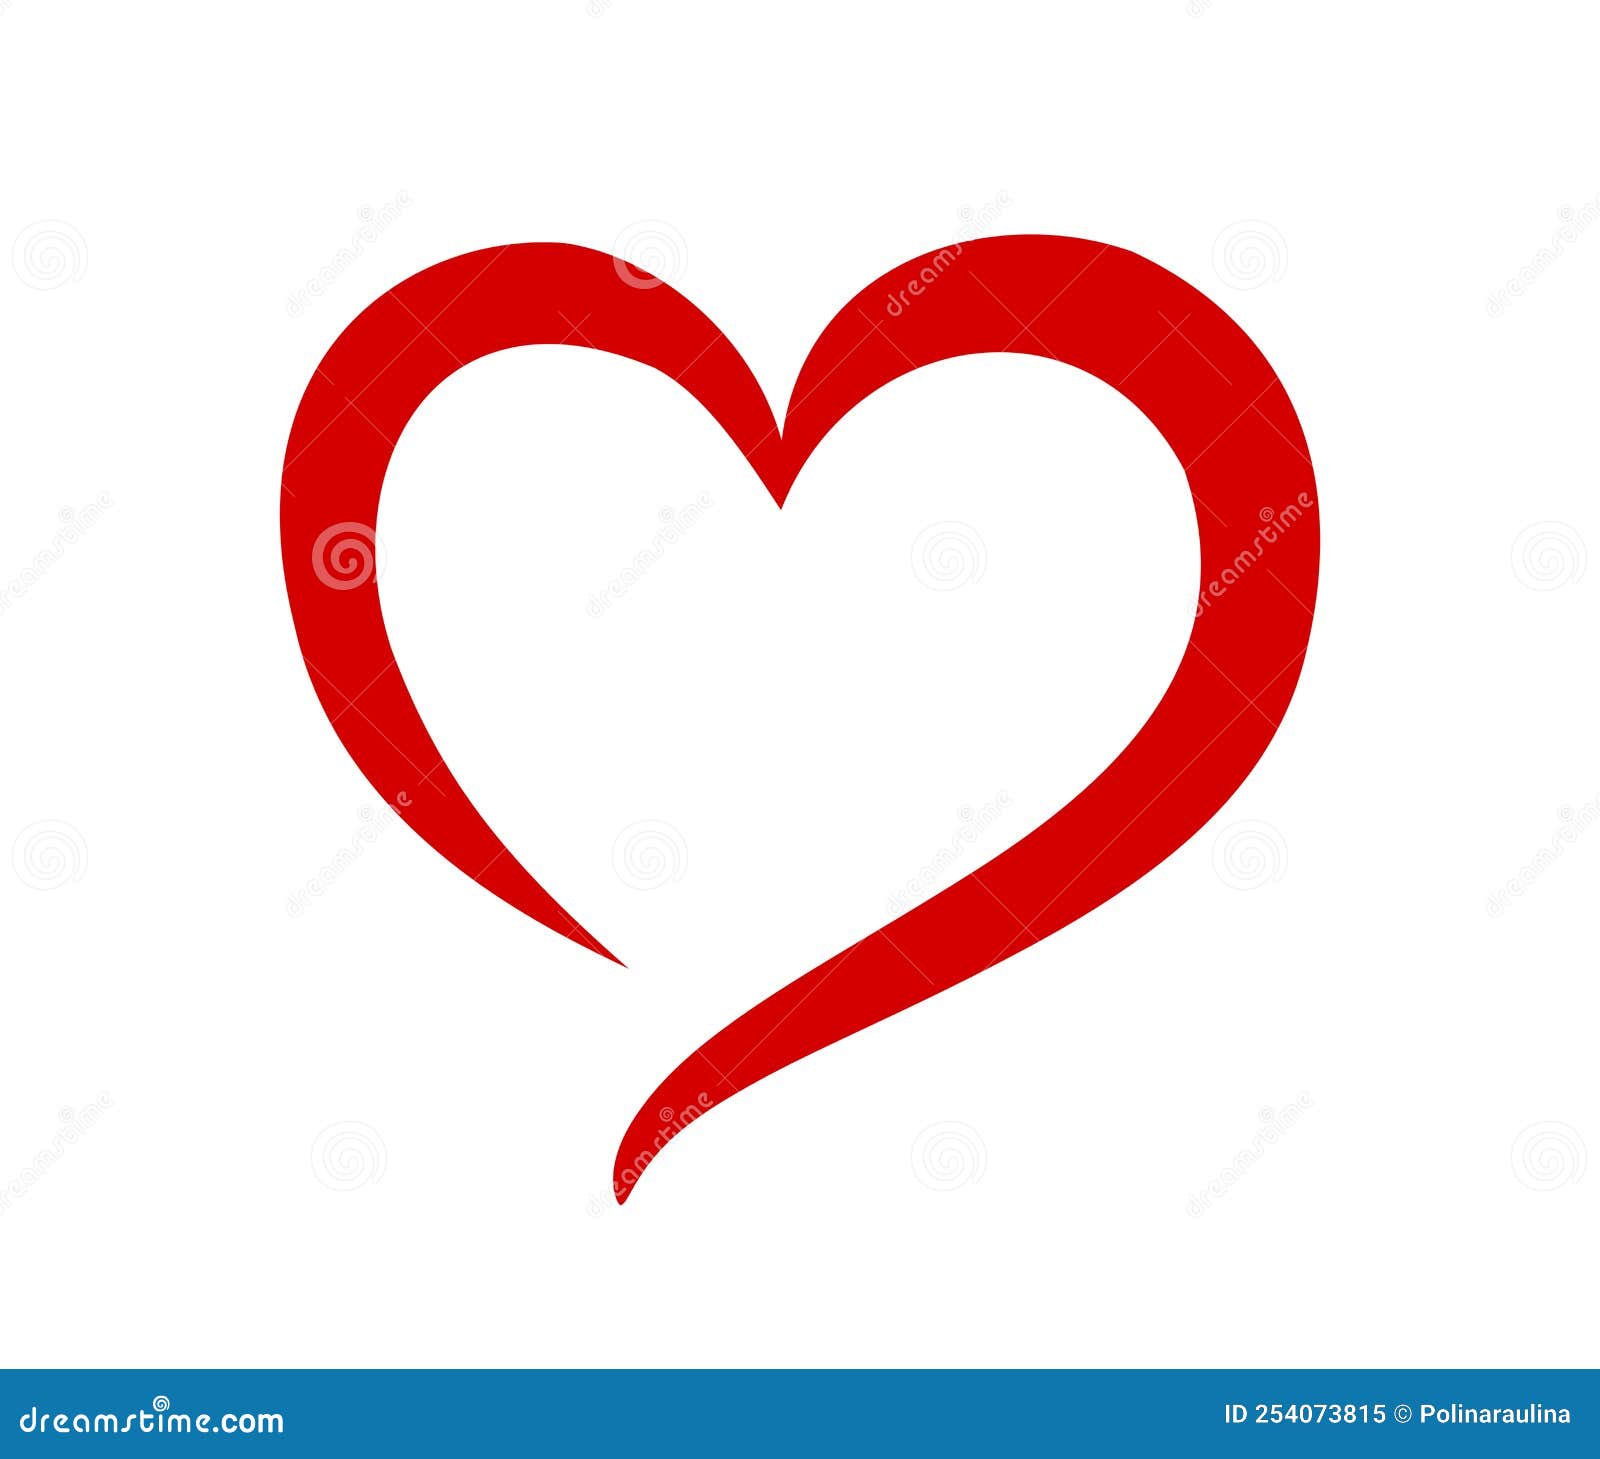 Ilustración de corazón rojo corazón de dibujos animados corazón amor  corazón dibujos animados png  PNGWing